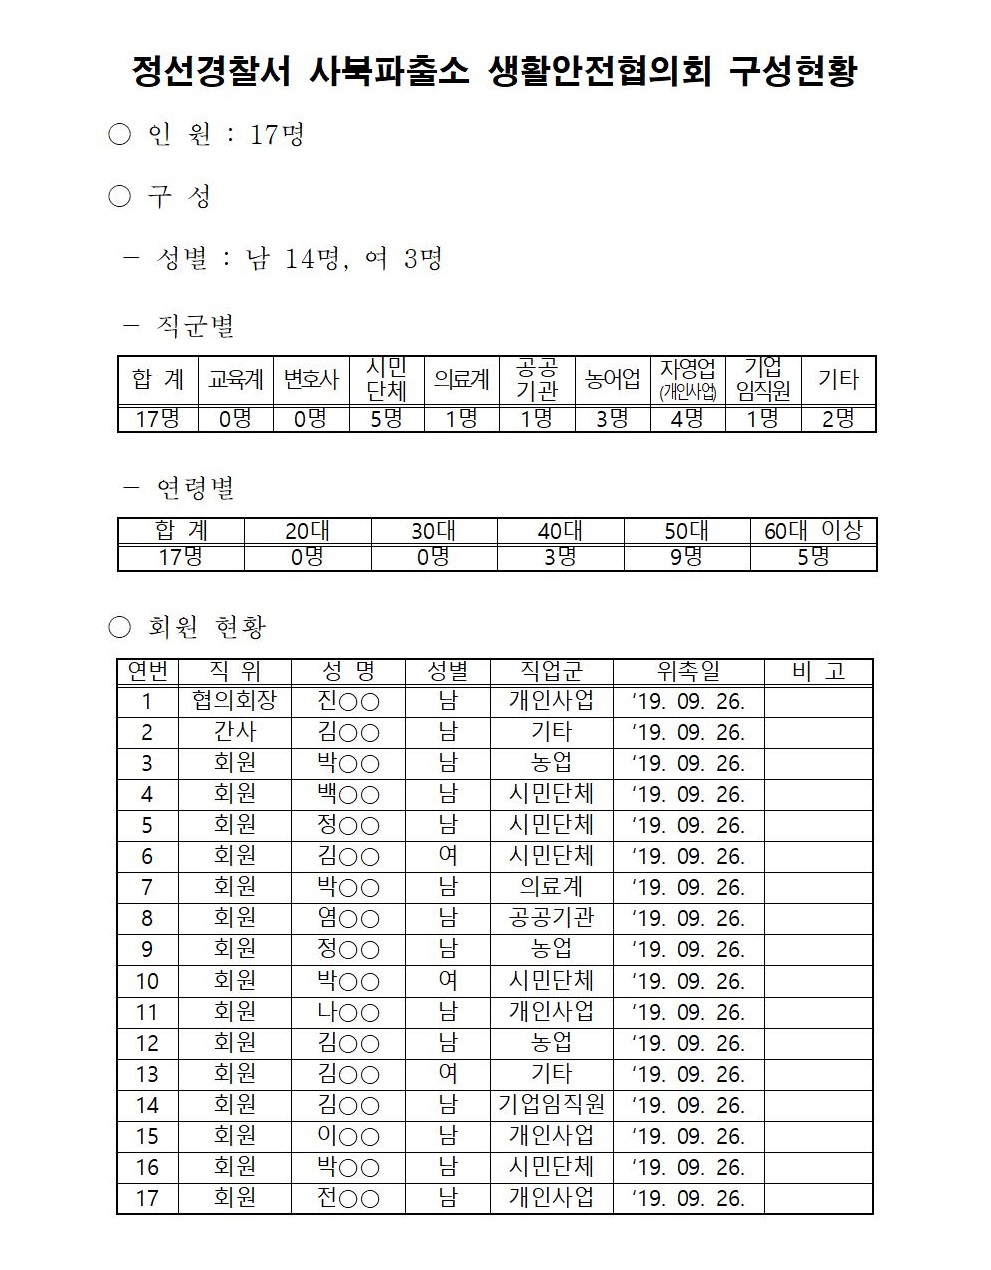 정선경찰서 생활안전협의회 구성 현황-사북 생활안전협의회(수정)001